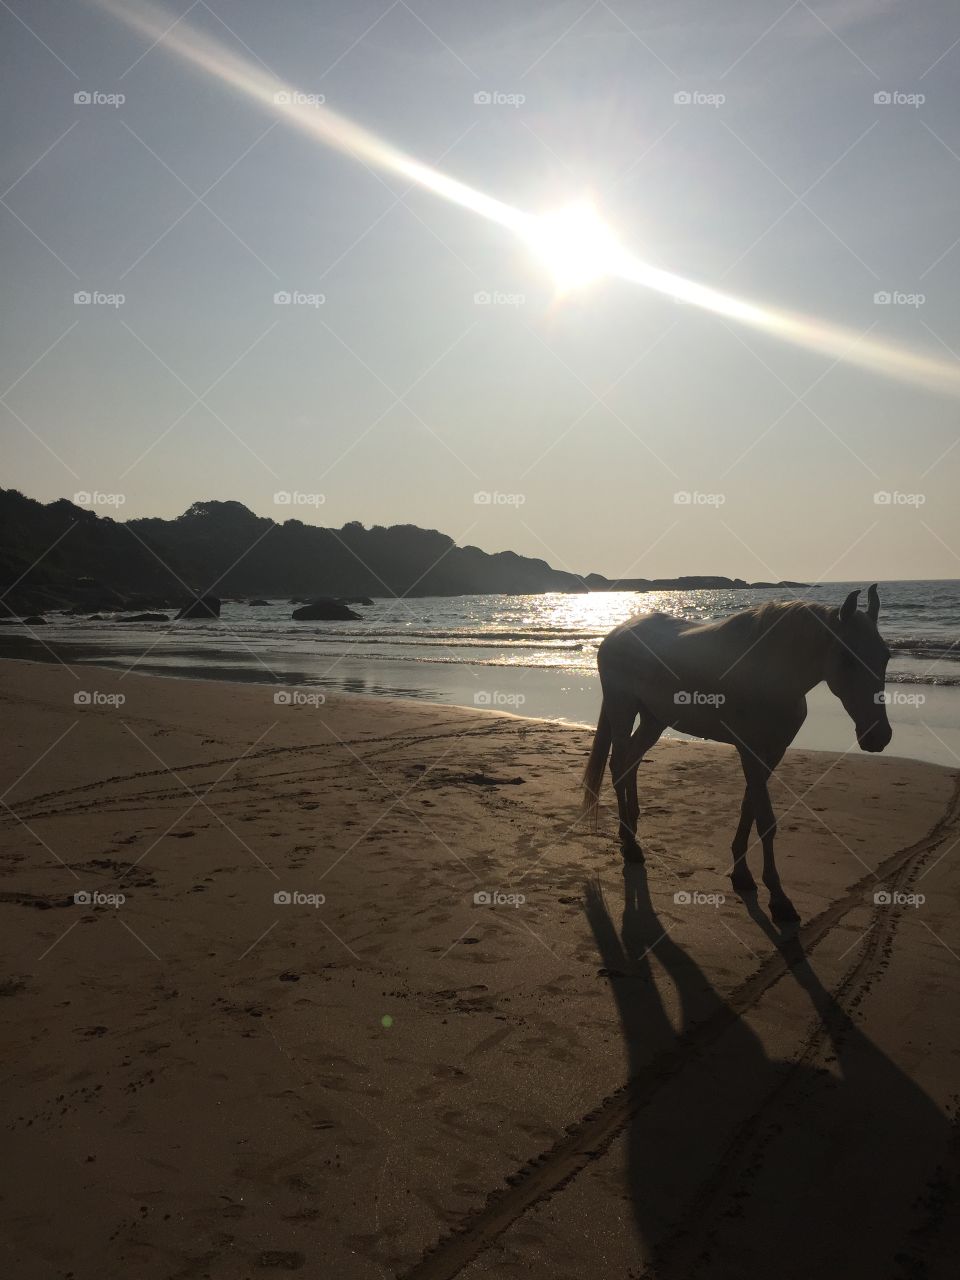 Wild horse in Agonda beach, Goa.